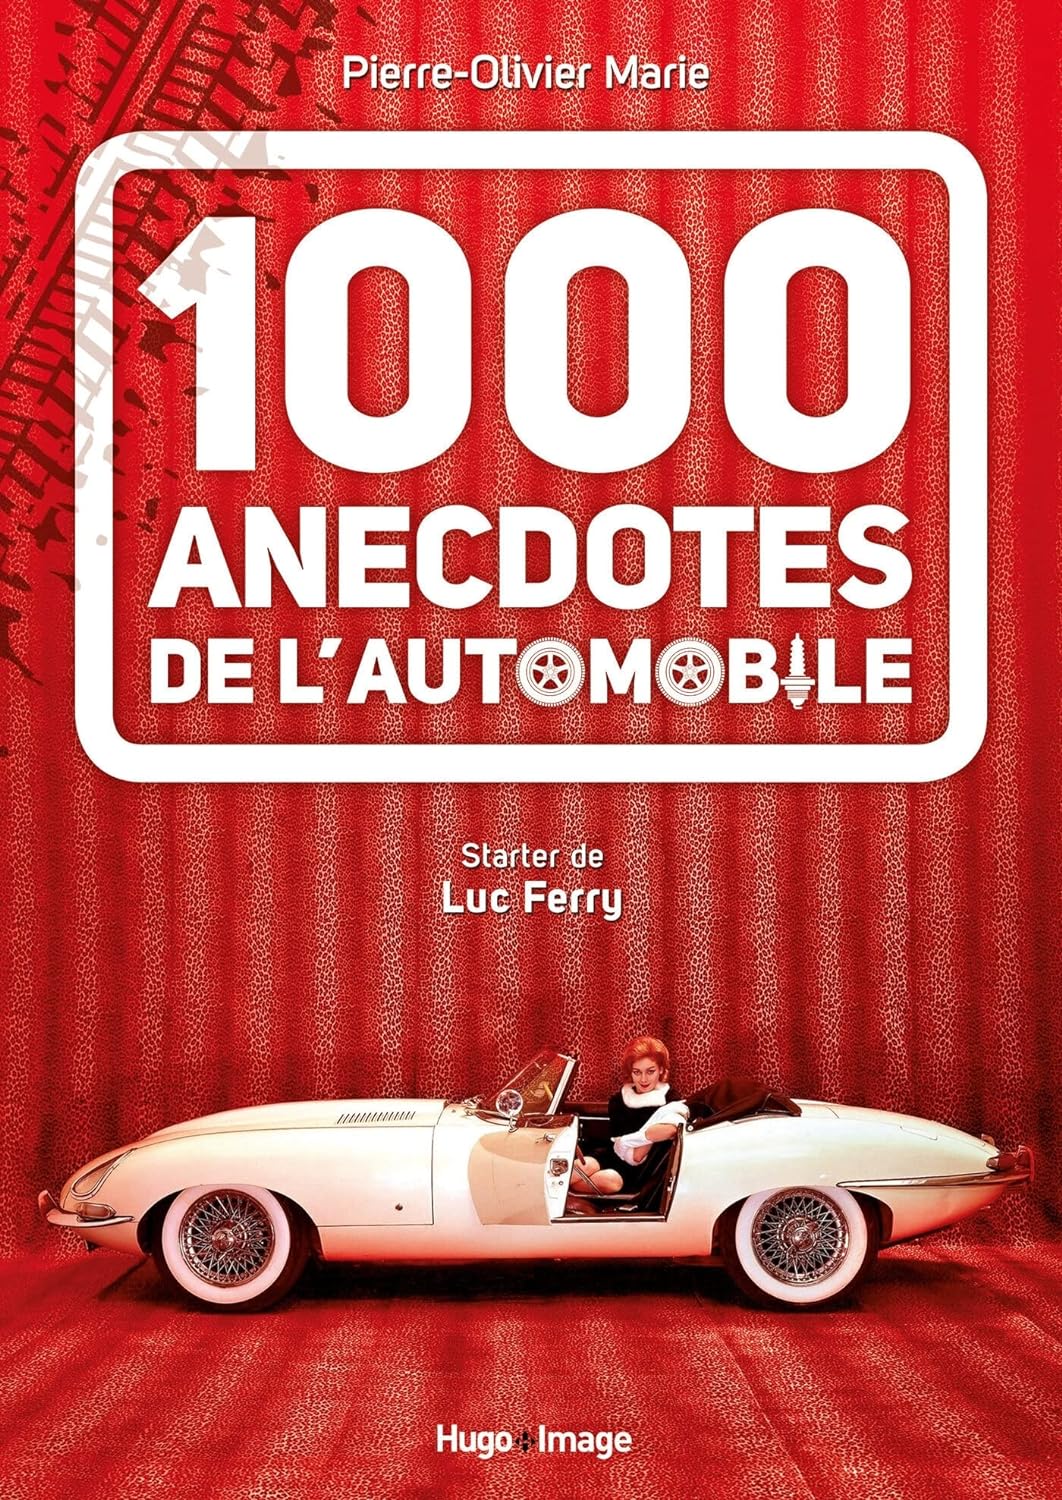 1000 anecdotes de l’automobile